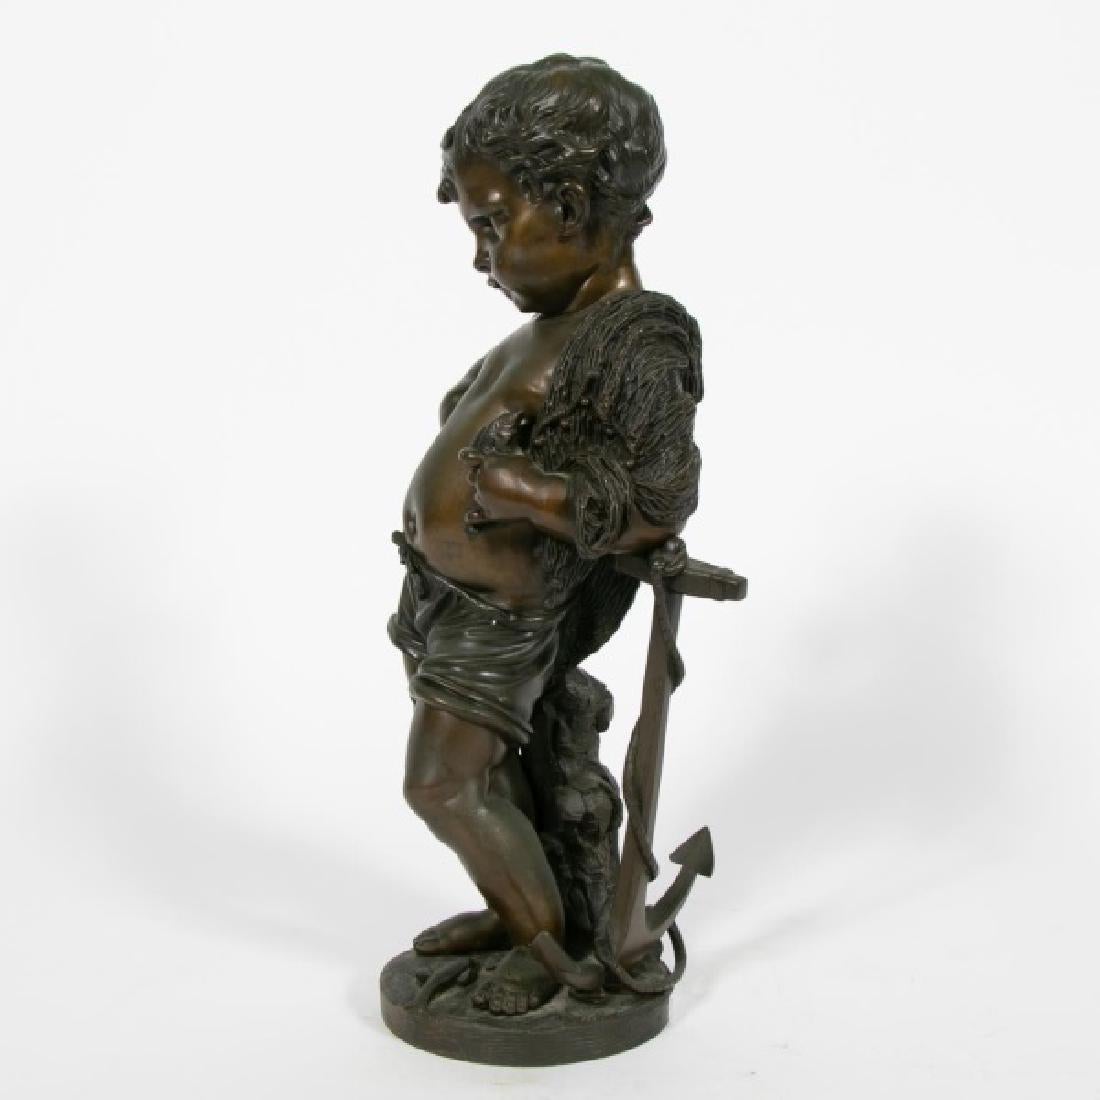 Fin du XIXe-20e siècle, école continentale, française ; sculpture en bronze coulé ; représentant la figure bien modelée d'un jeune garçon, drapé dans un filet, le bras reposant sur une ancre, tenant un poisson ; sur une base circulaire avec des